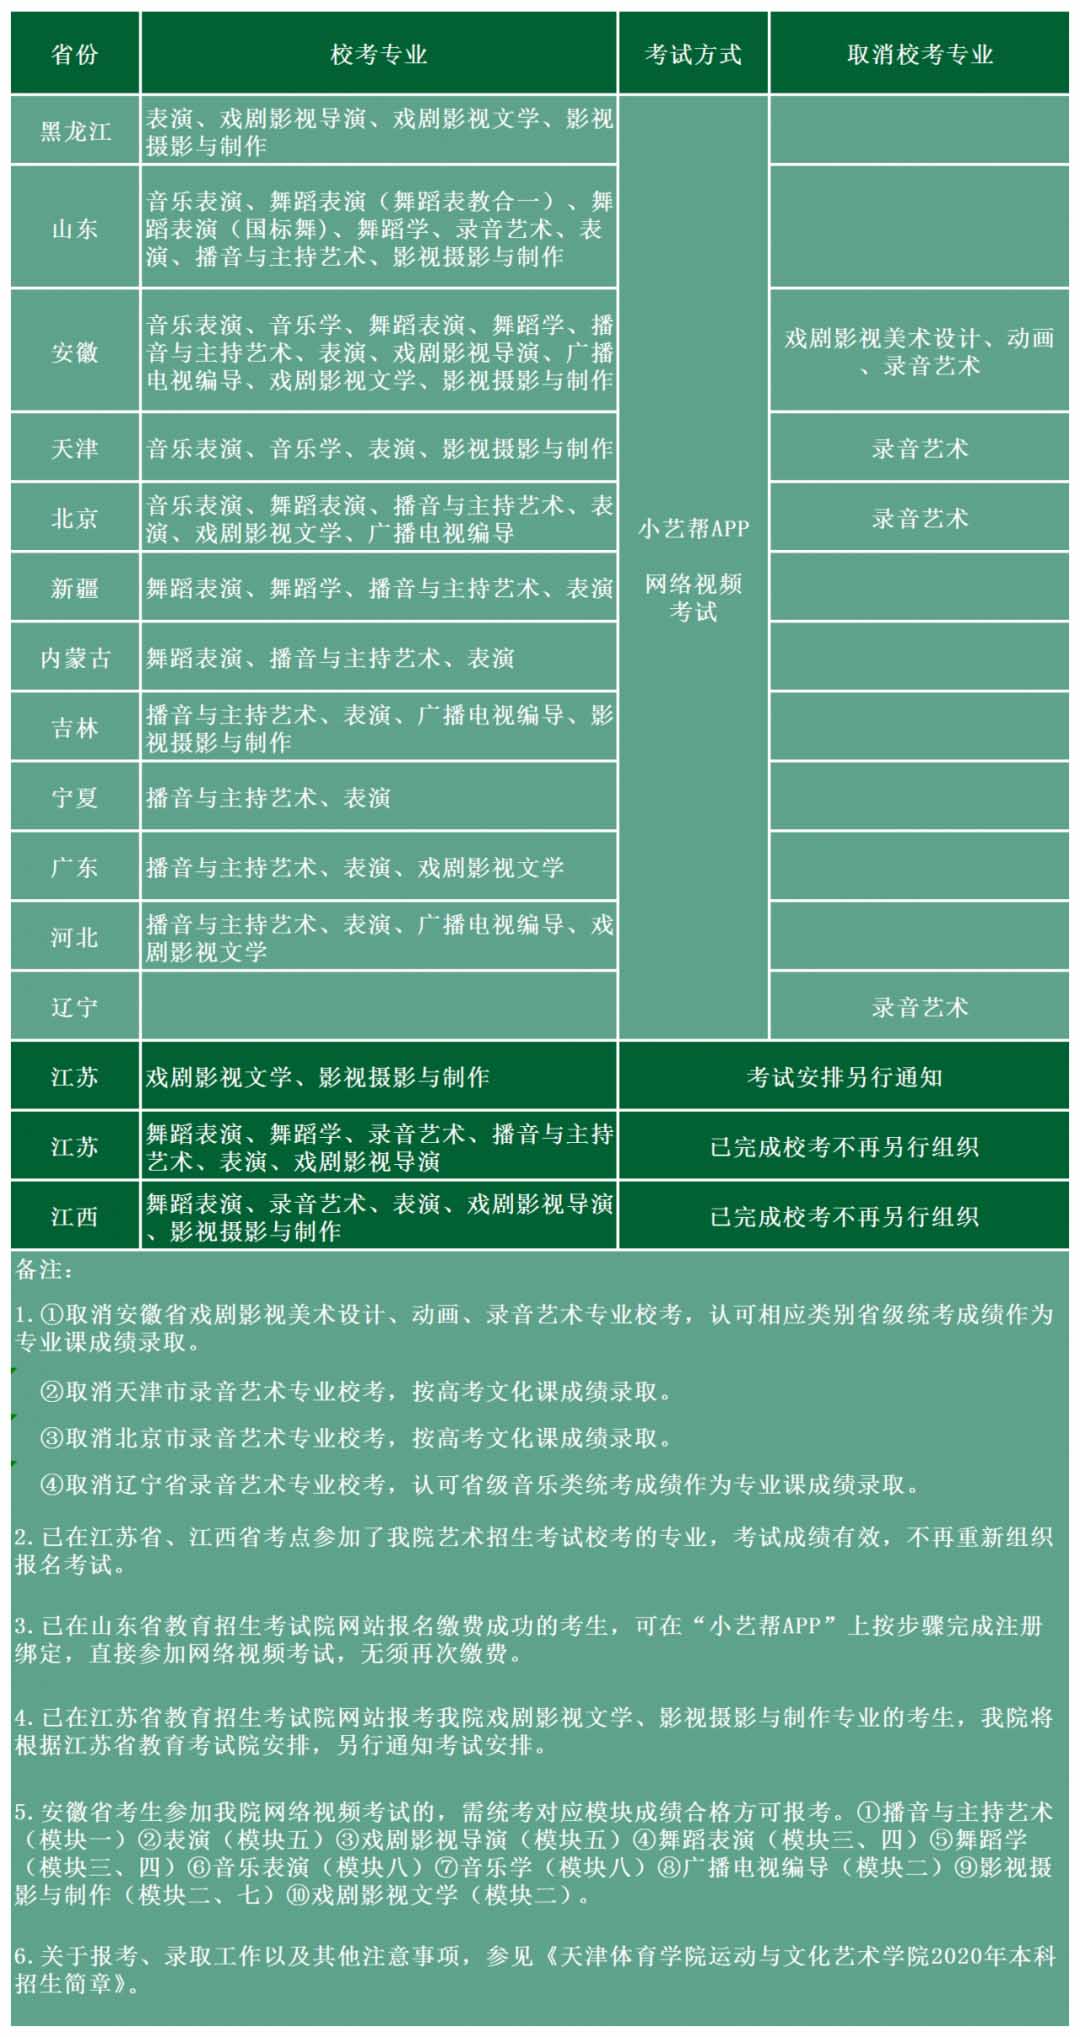 天津体育学院运动与文化艺术学院2020年艺术类校考方案调整公告